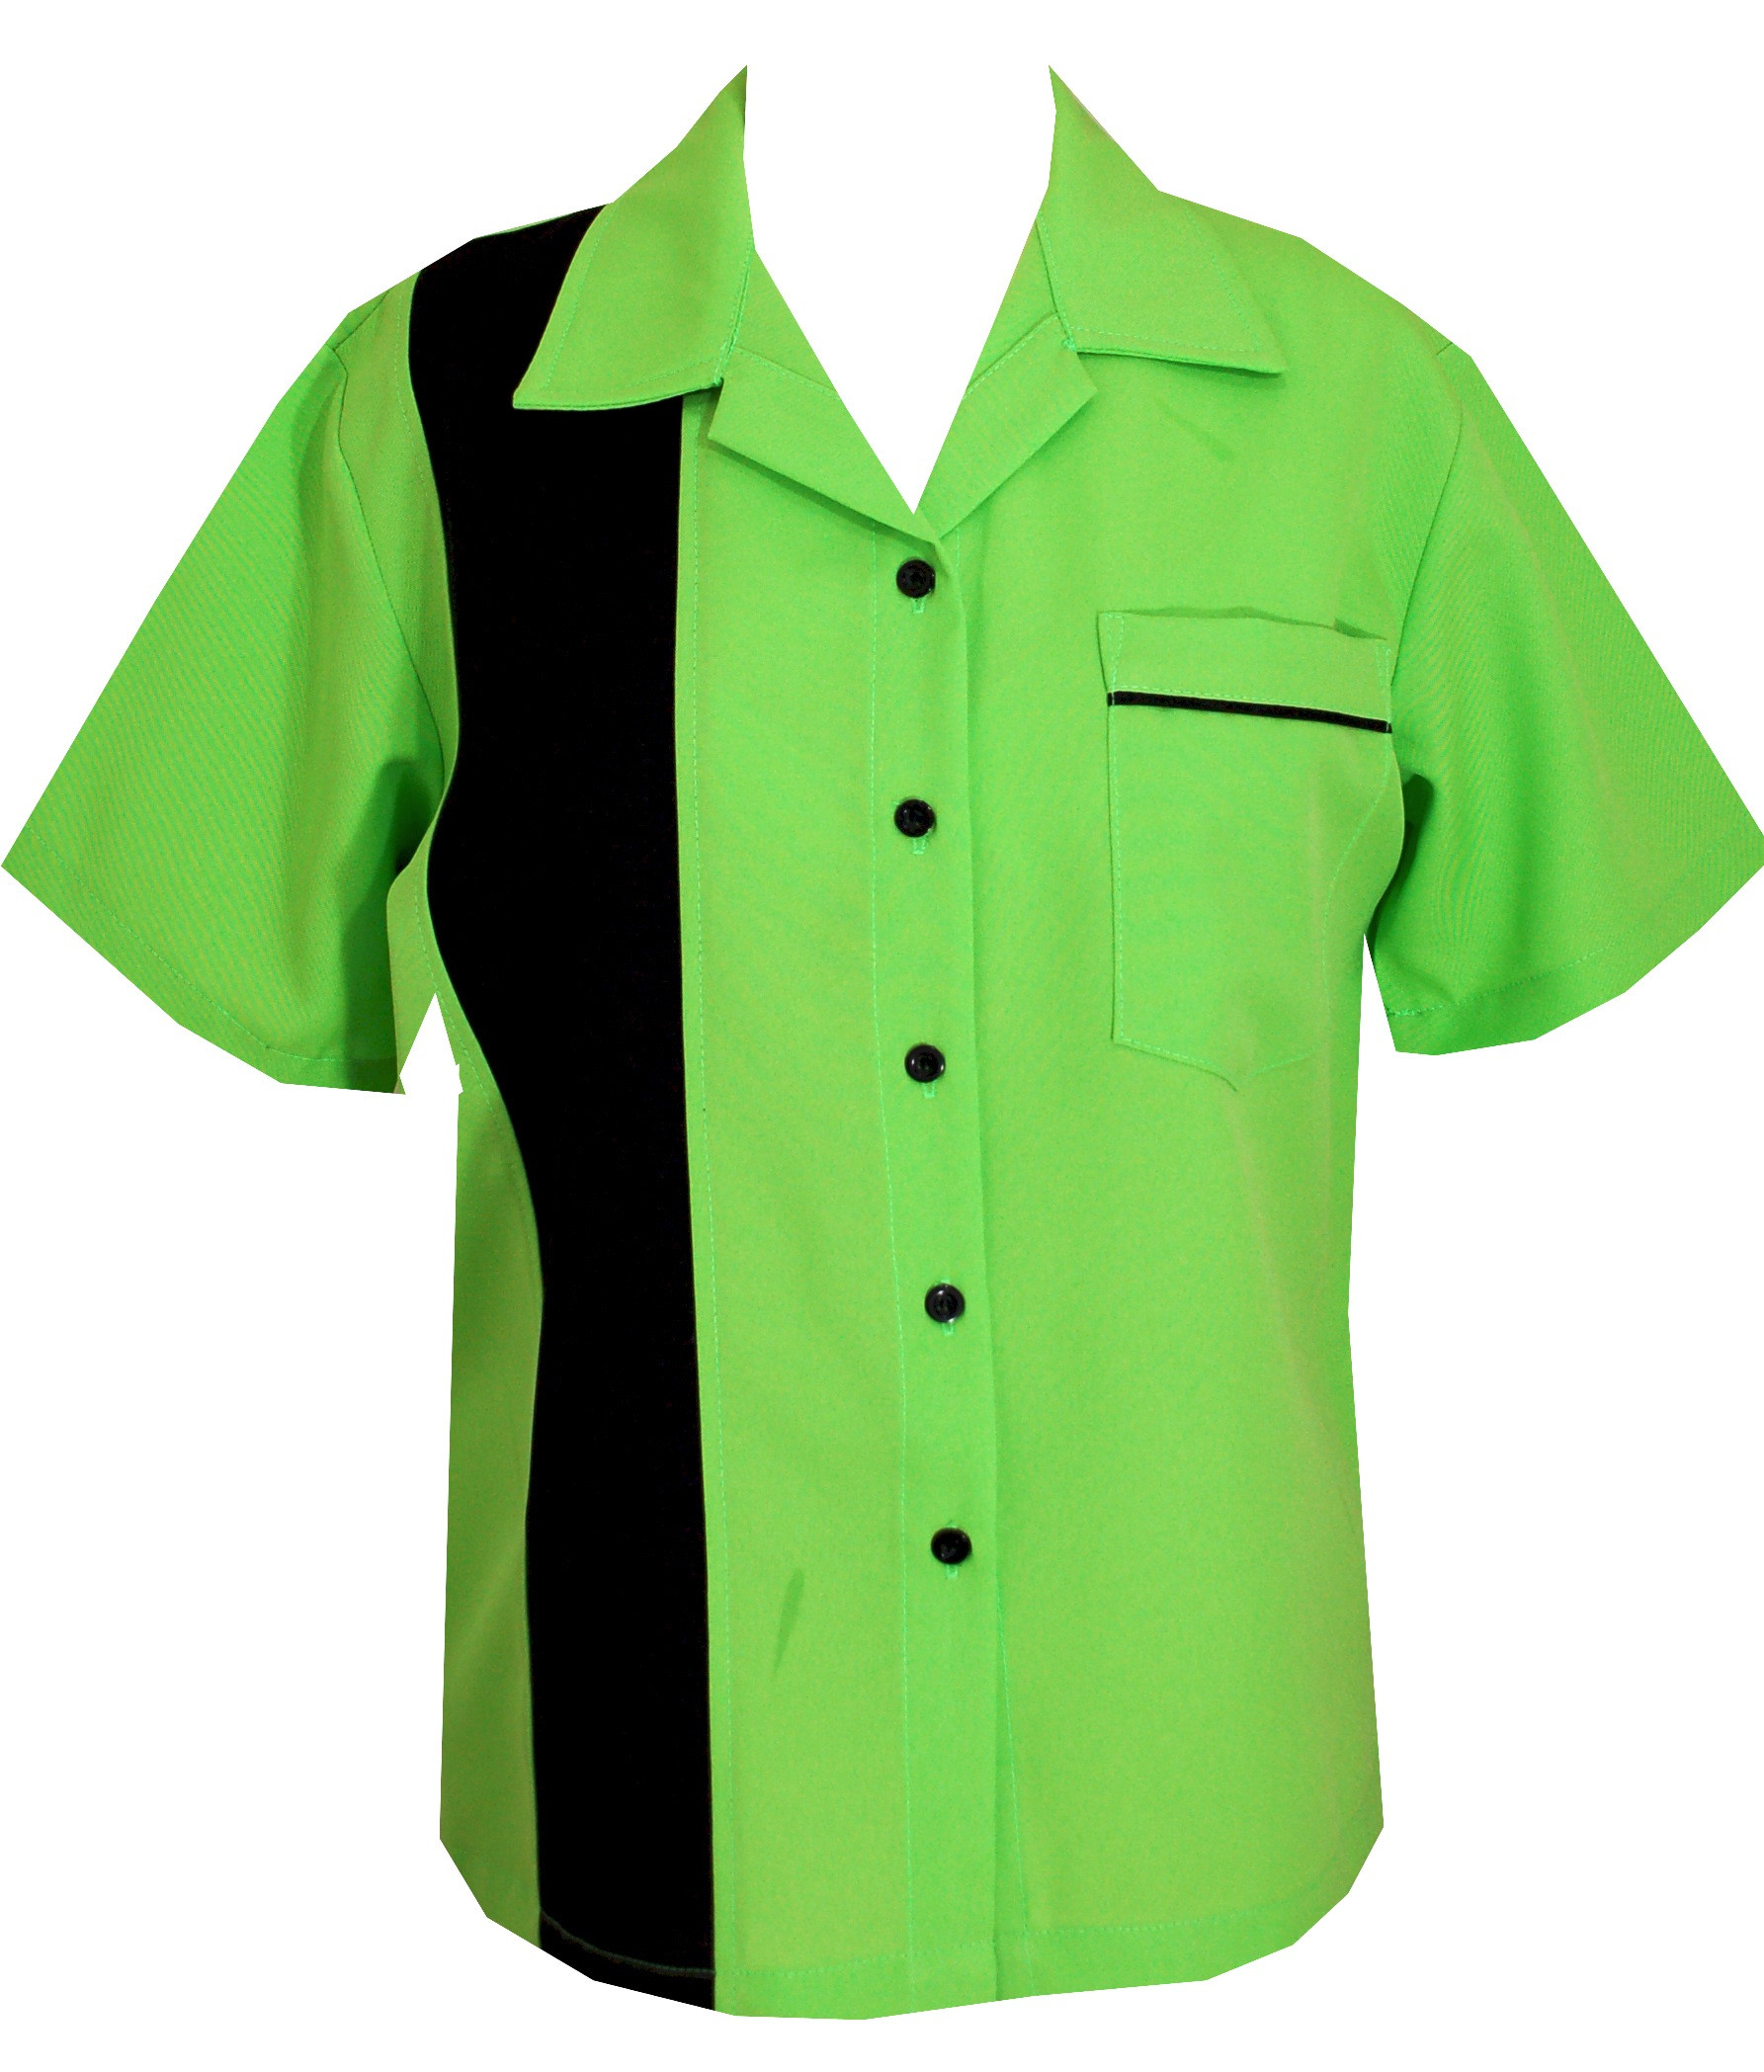 Women's Lime Green Bowling Shirt | Neon Bowling Shirts